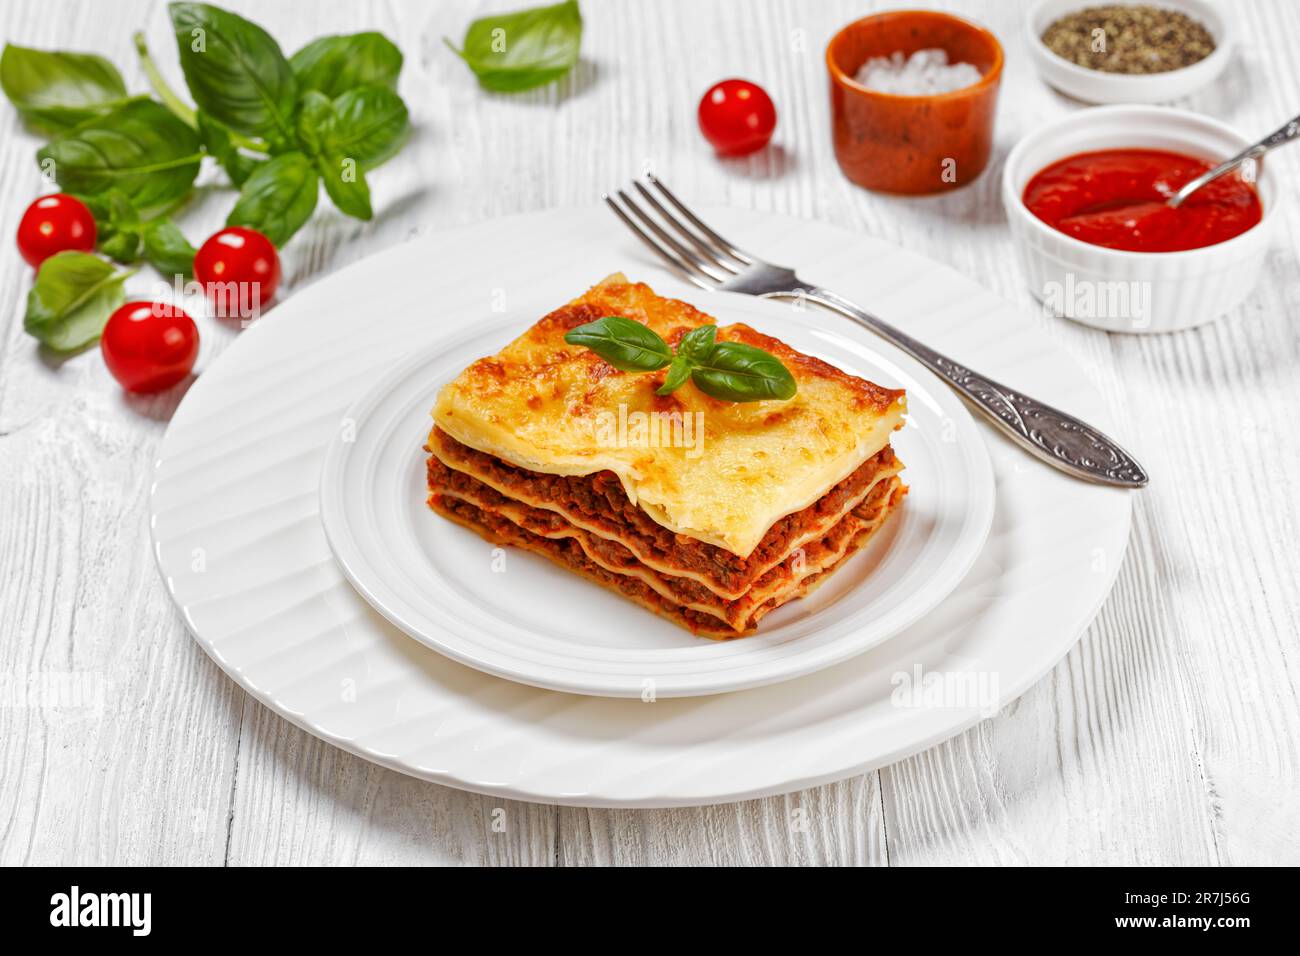 portion de lasagnes al forno, lasagnes de bœuf italien avec du bœuf haché, sauce marinara, nouilles de pâtes et fromage ricotta sur une assiette blanche sur le blanc w. Banque D'Images